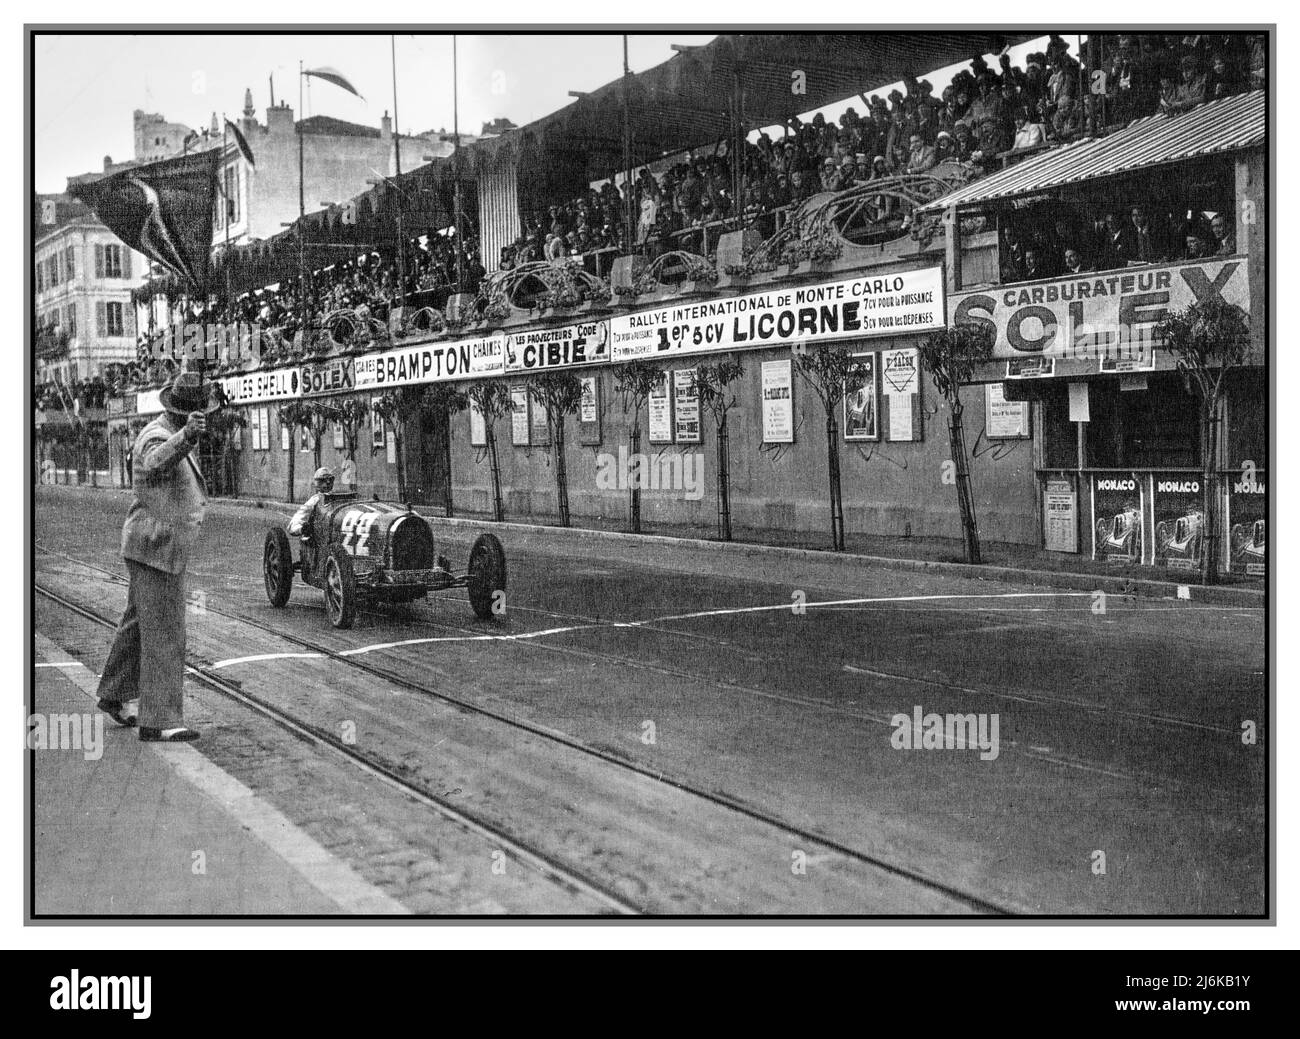 GRAND PRIX DE MONACO MILLÉSIME 1930 René Dreyfus franchissant la ligne au Grand Prix de Monaco 1930 avec Bugatti 35B. Le Grand Prix de Monaco 1930 était une course automobile du Grand Prix qui s'est tenue au circuit de Monaco le 6 avril 1930. Le Français René Dreyfus a remporté la course dans un Bugatti numéro 22. Banque D'Images